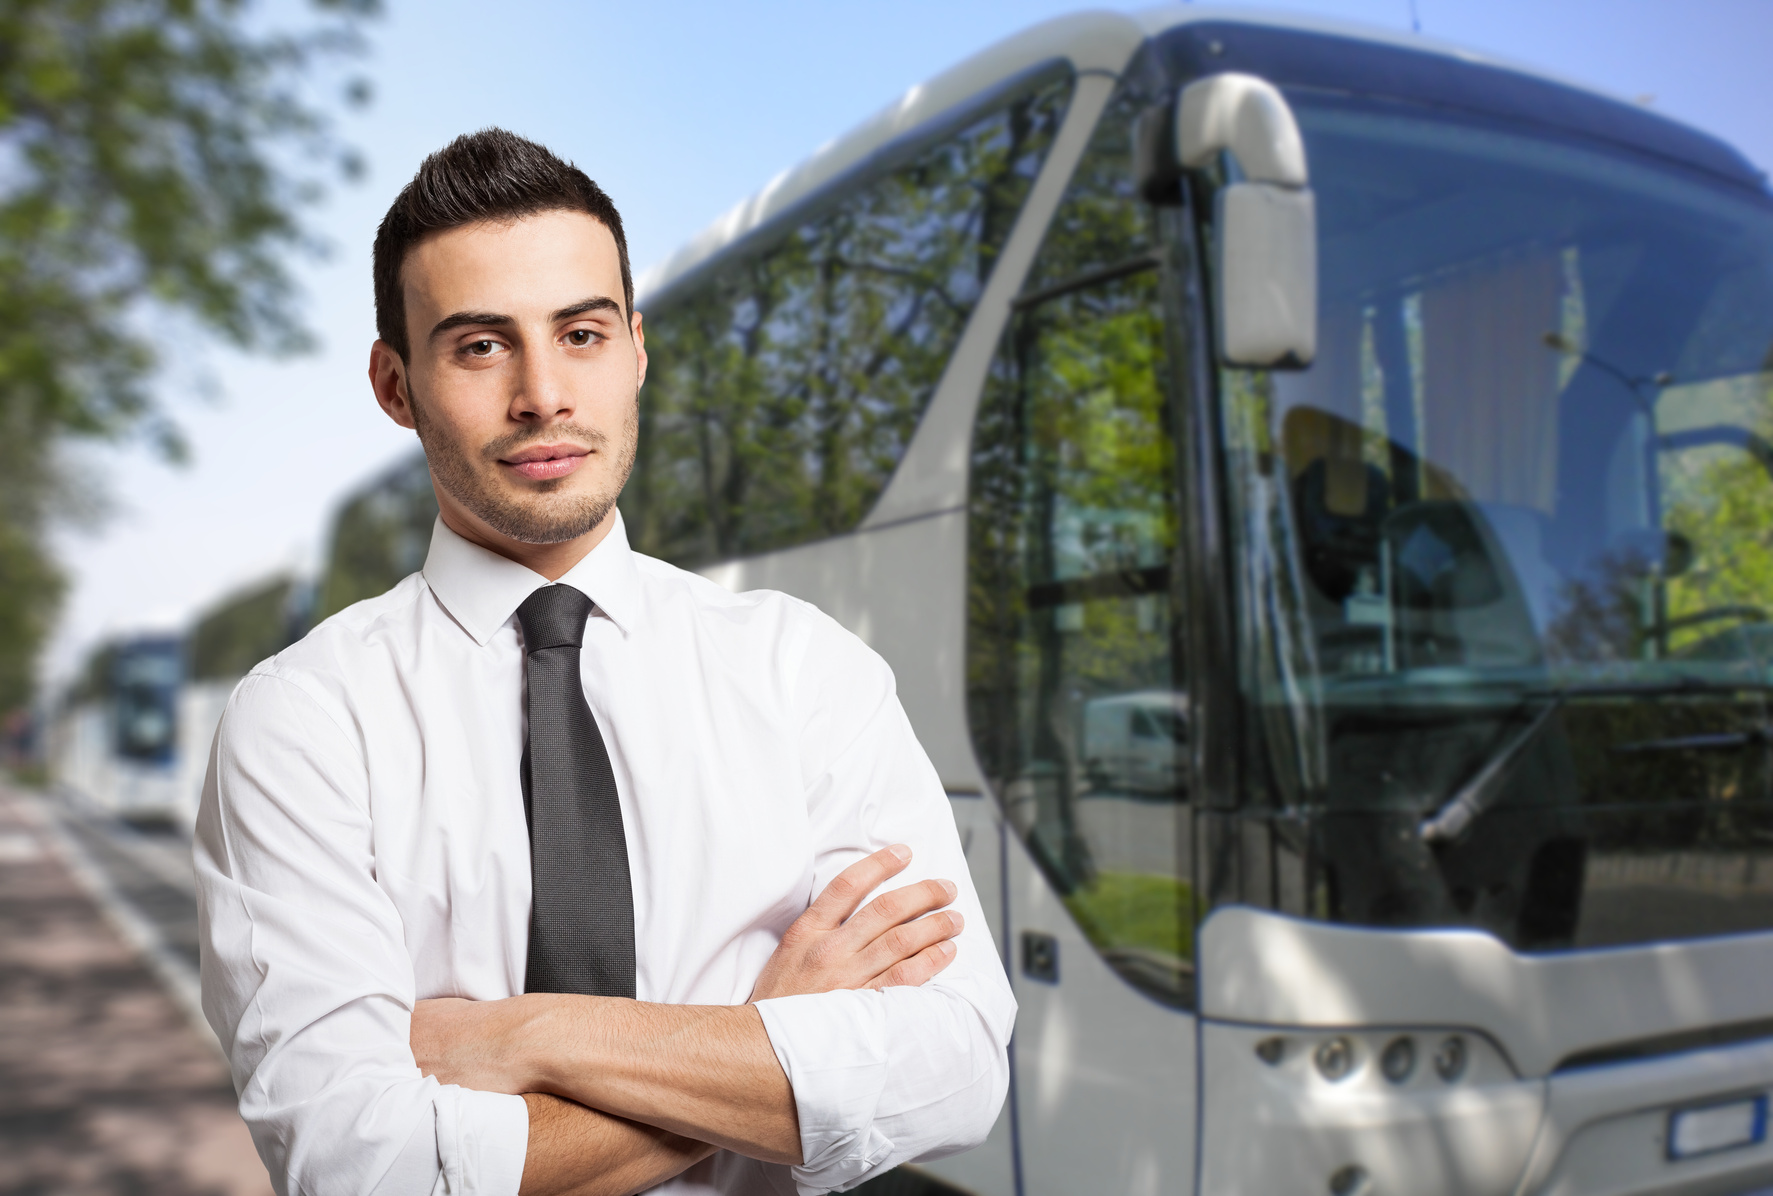 Bus Driver Portrait